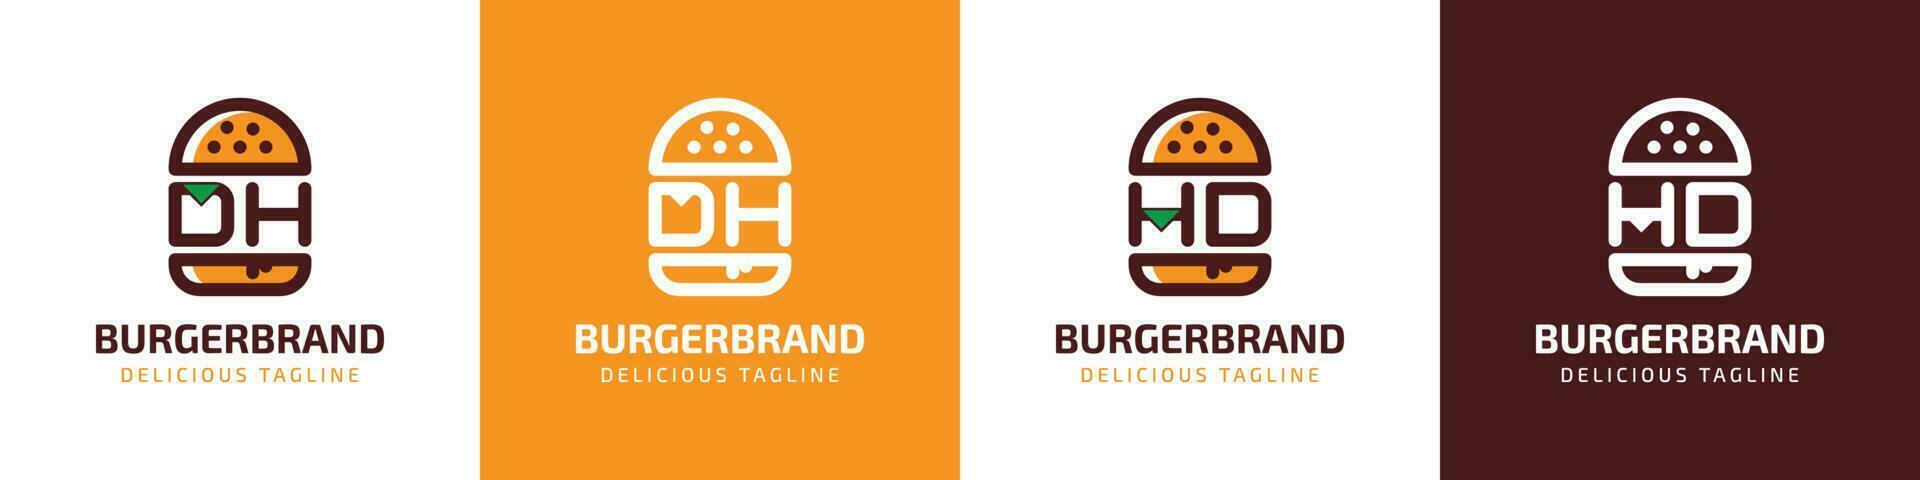 letra dh y hd hamburguesa logo, adecuado para ninguna negocio relacionado a hamburguesa con dh o hd iniciales. vector